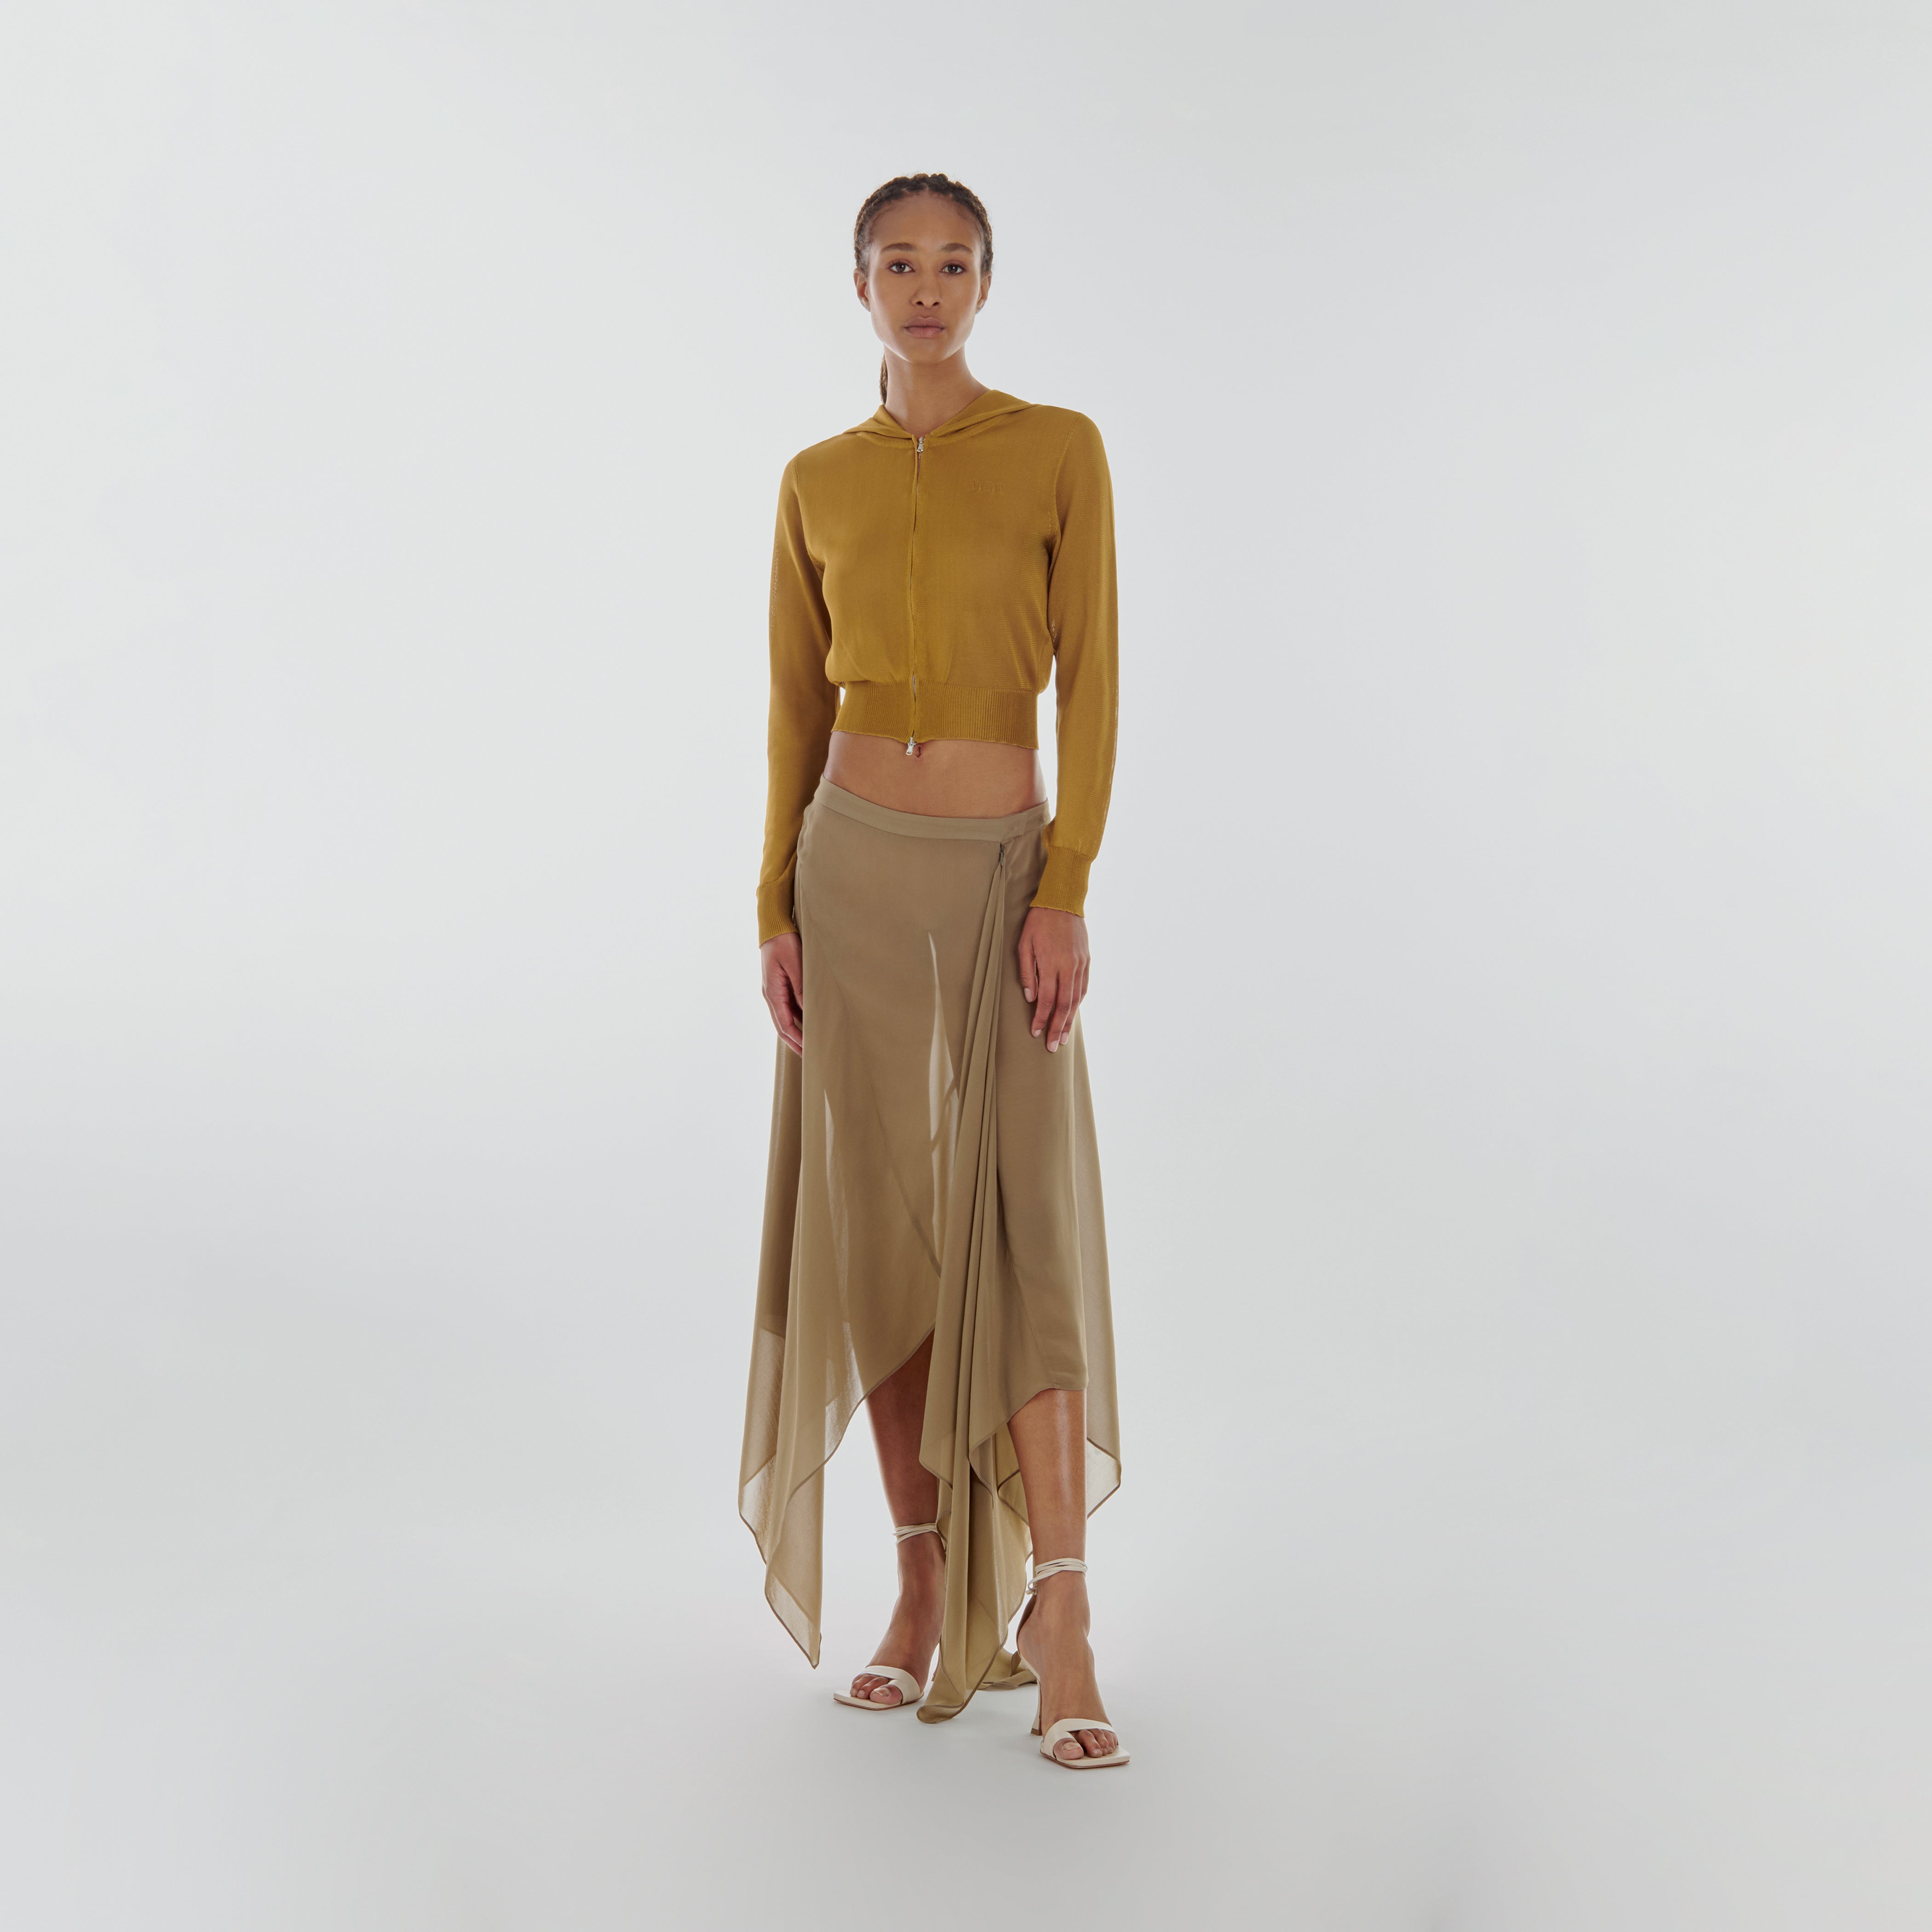 Spirit Skirt in moss | Lara Chamandi